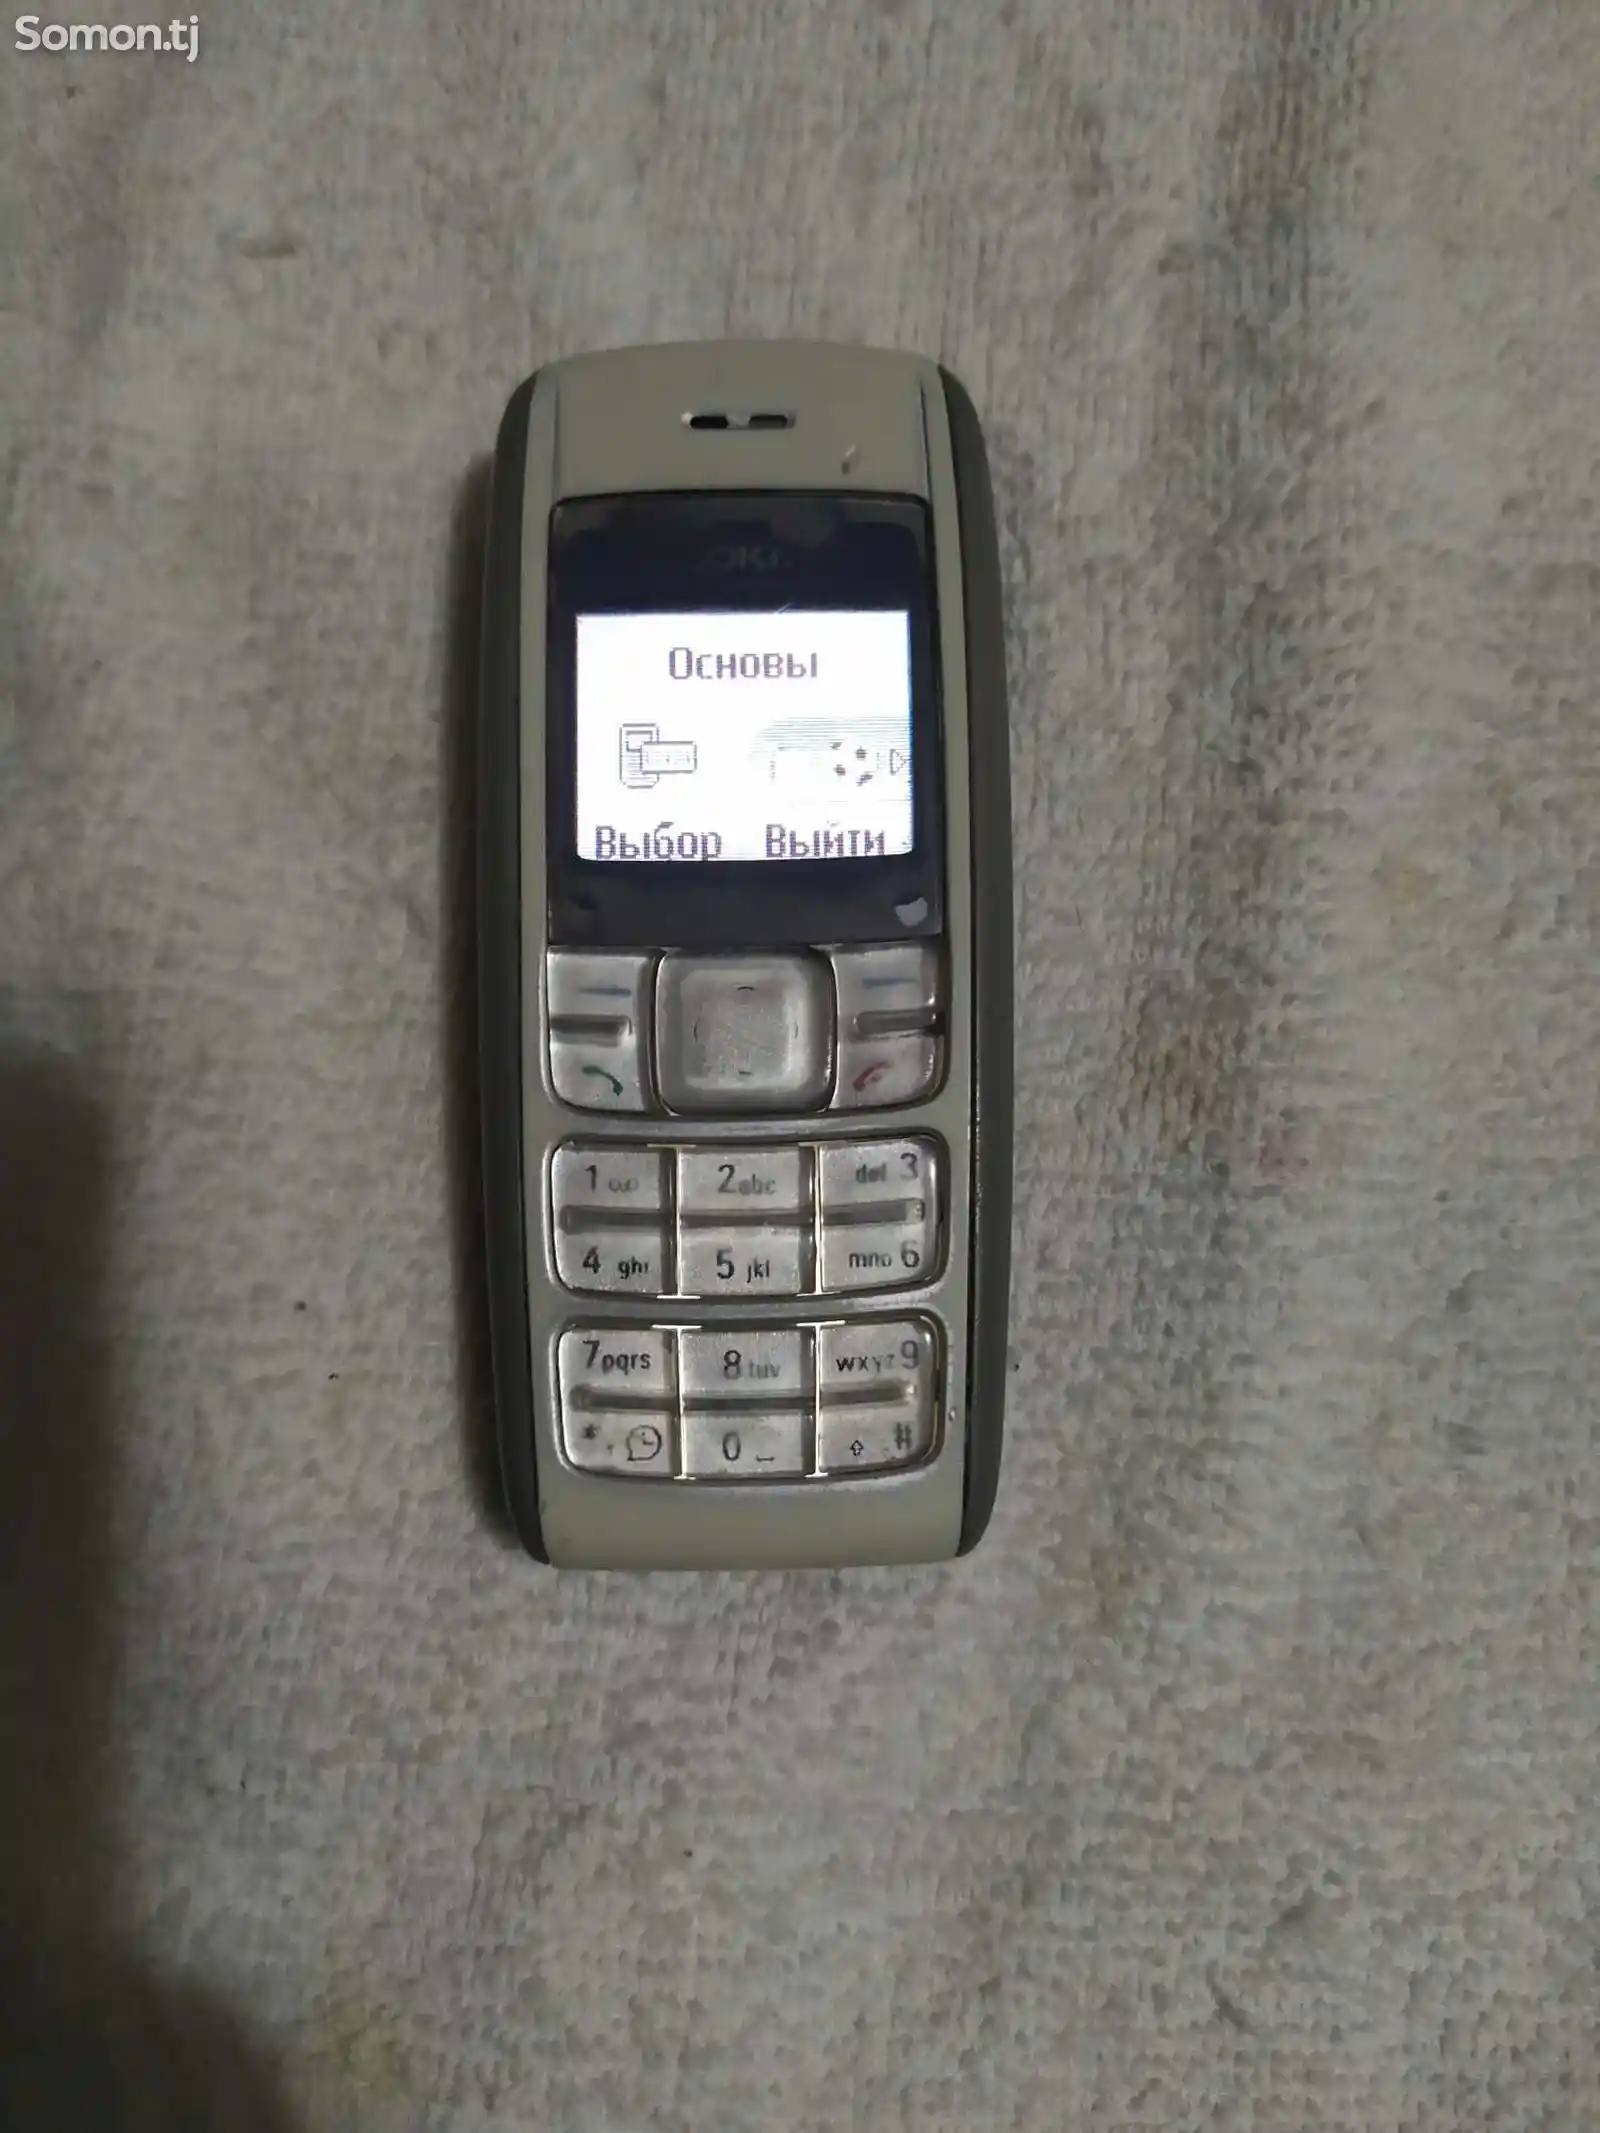 Nokia 1600-1